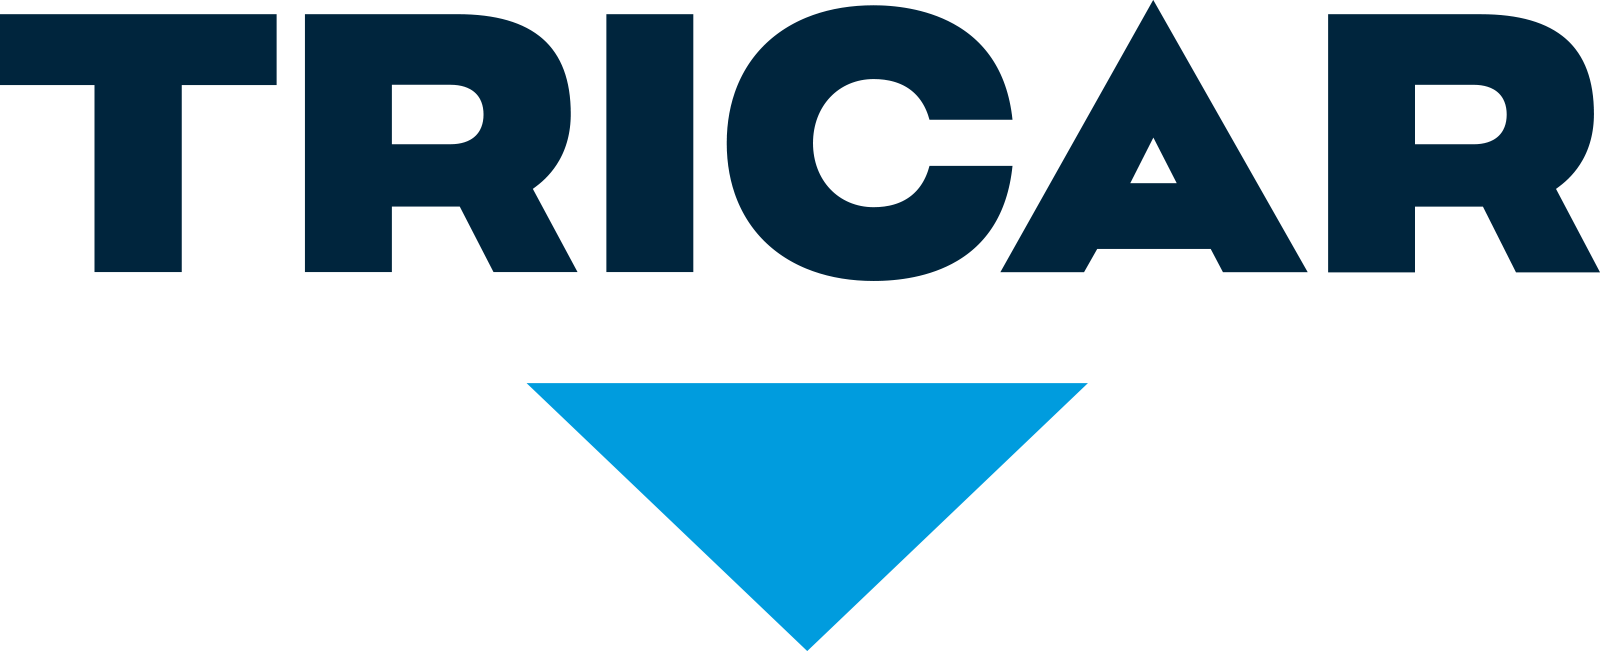 Tricar_Logo_Web.png